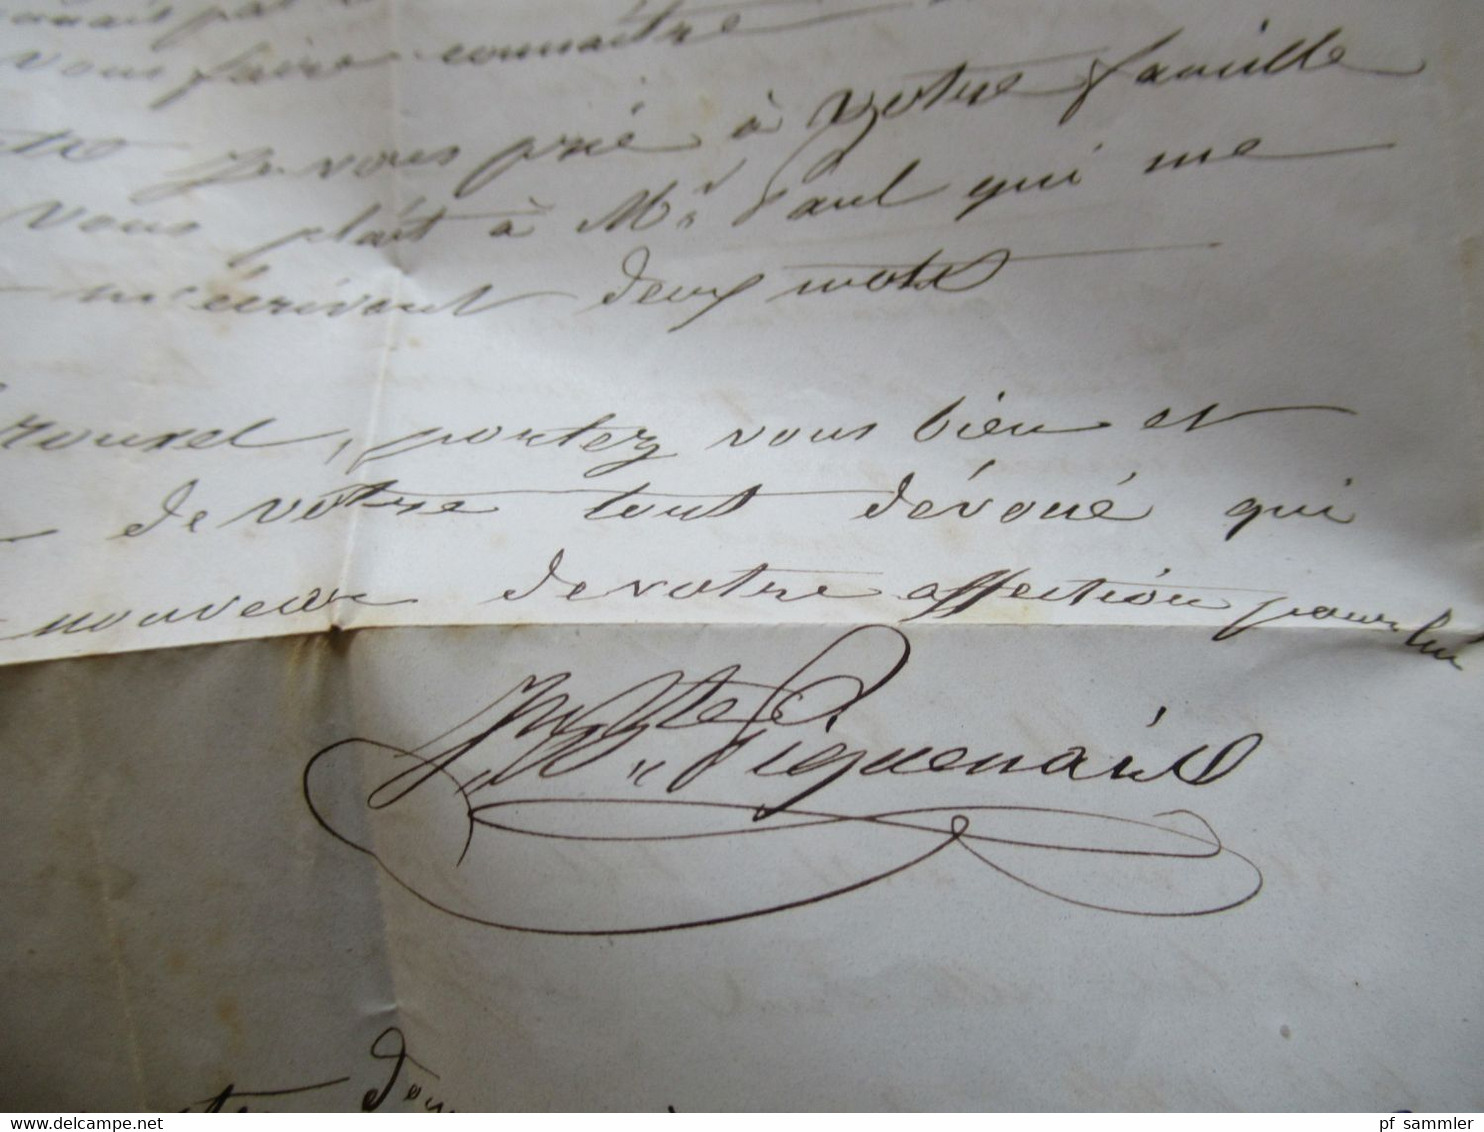 Italien 1856 roter Stempel Saard Faltbrief mit Inhalt nach Legue gesendet Schiffspost ?!